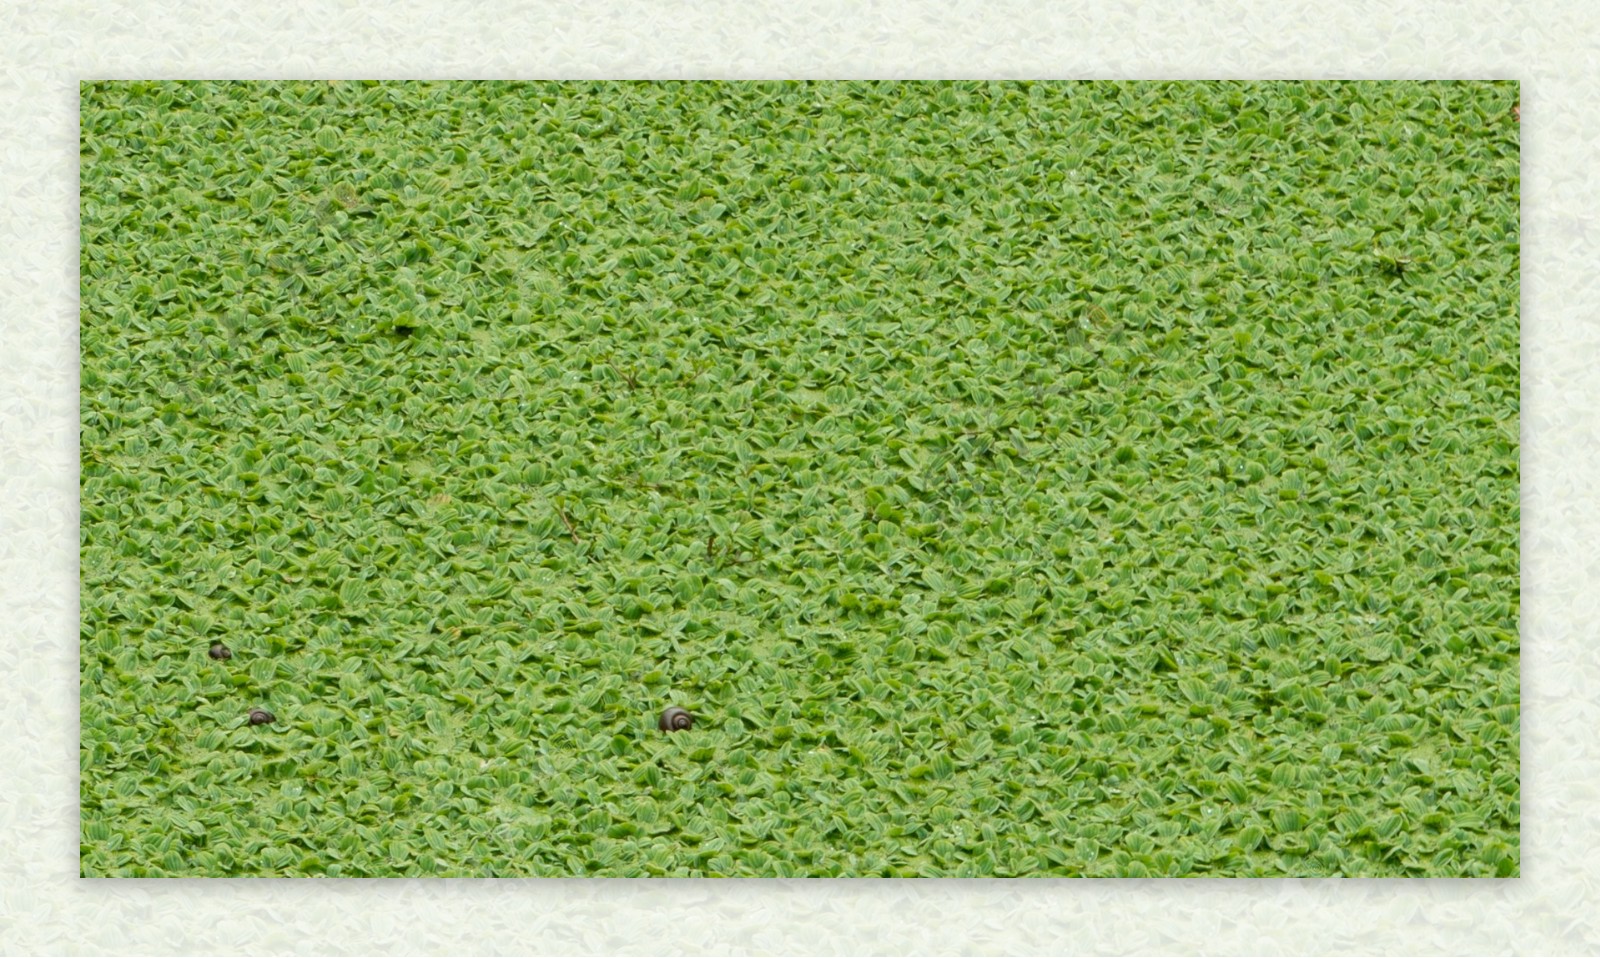 湖面水草元素壁纸摄影